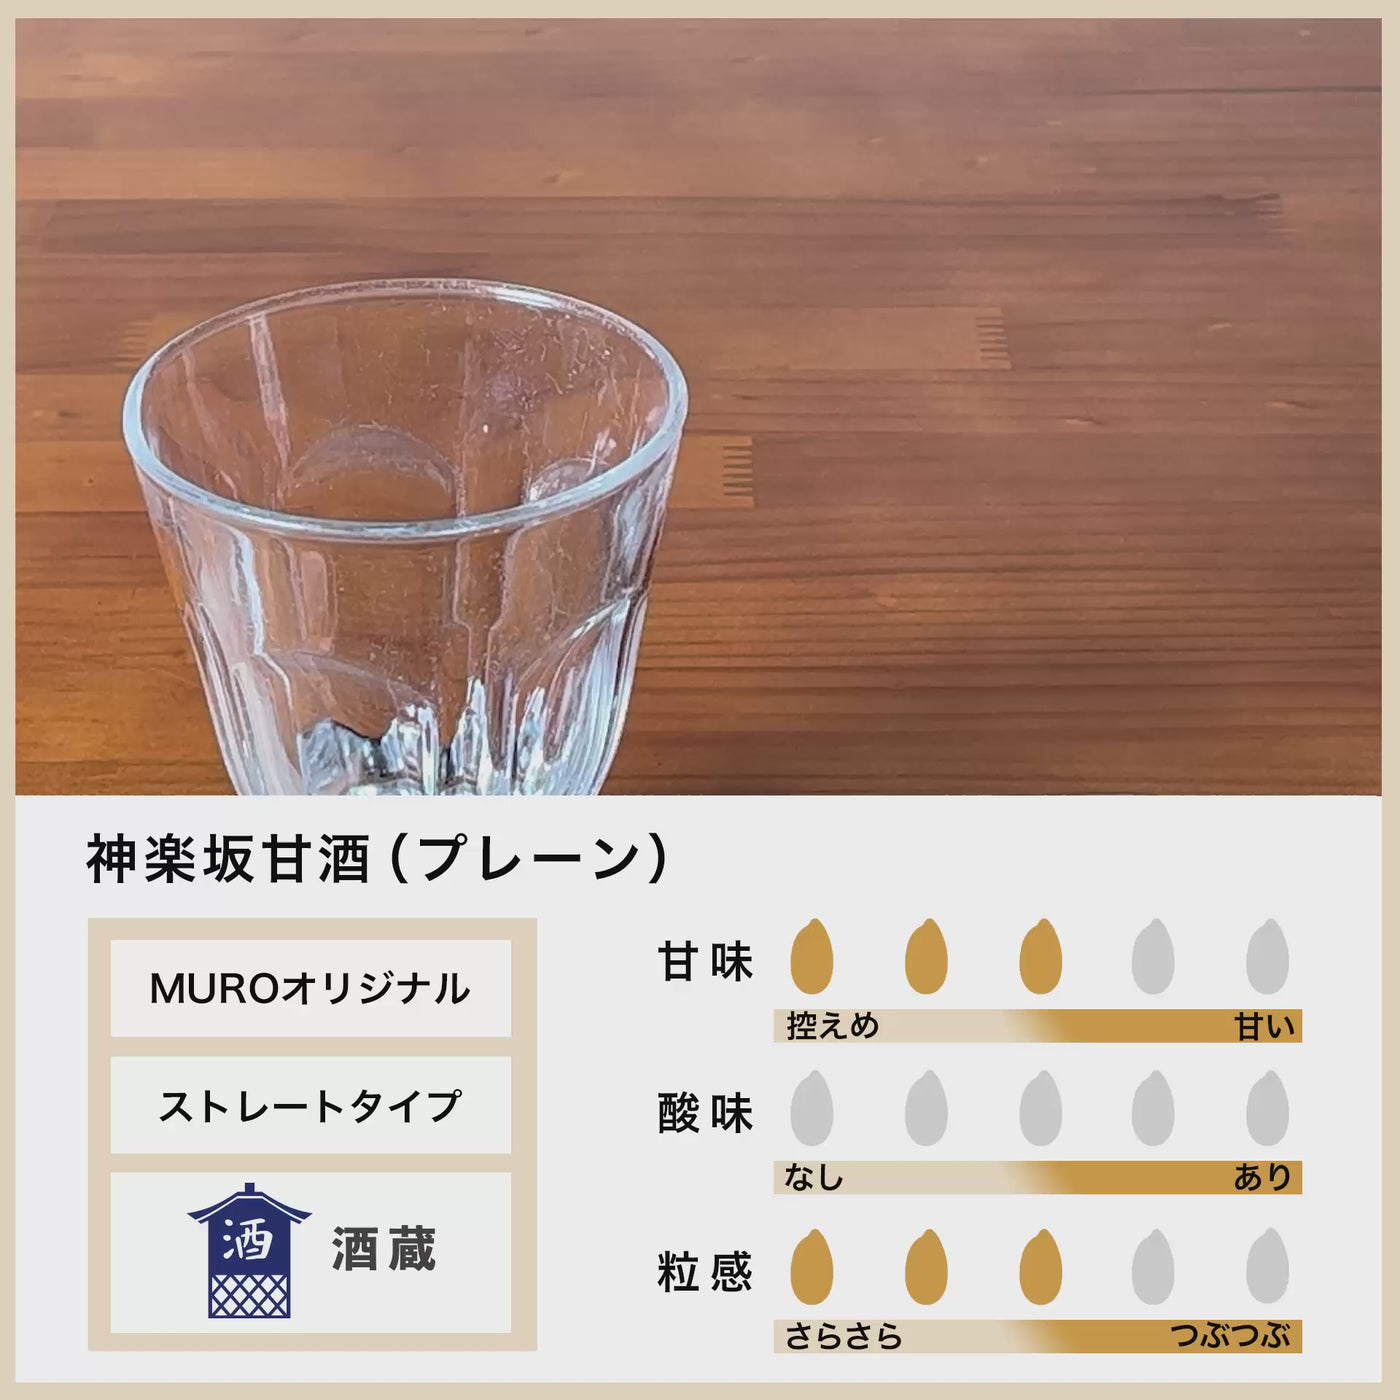 [Bulk purchase] Kagurazaka amazake 500ml x 12 bottles set